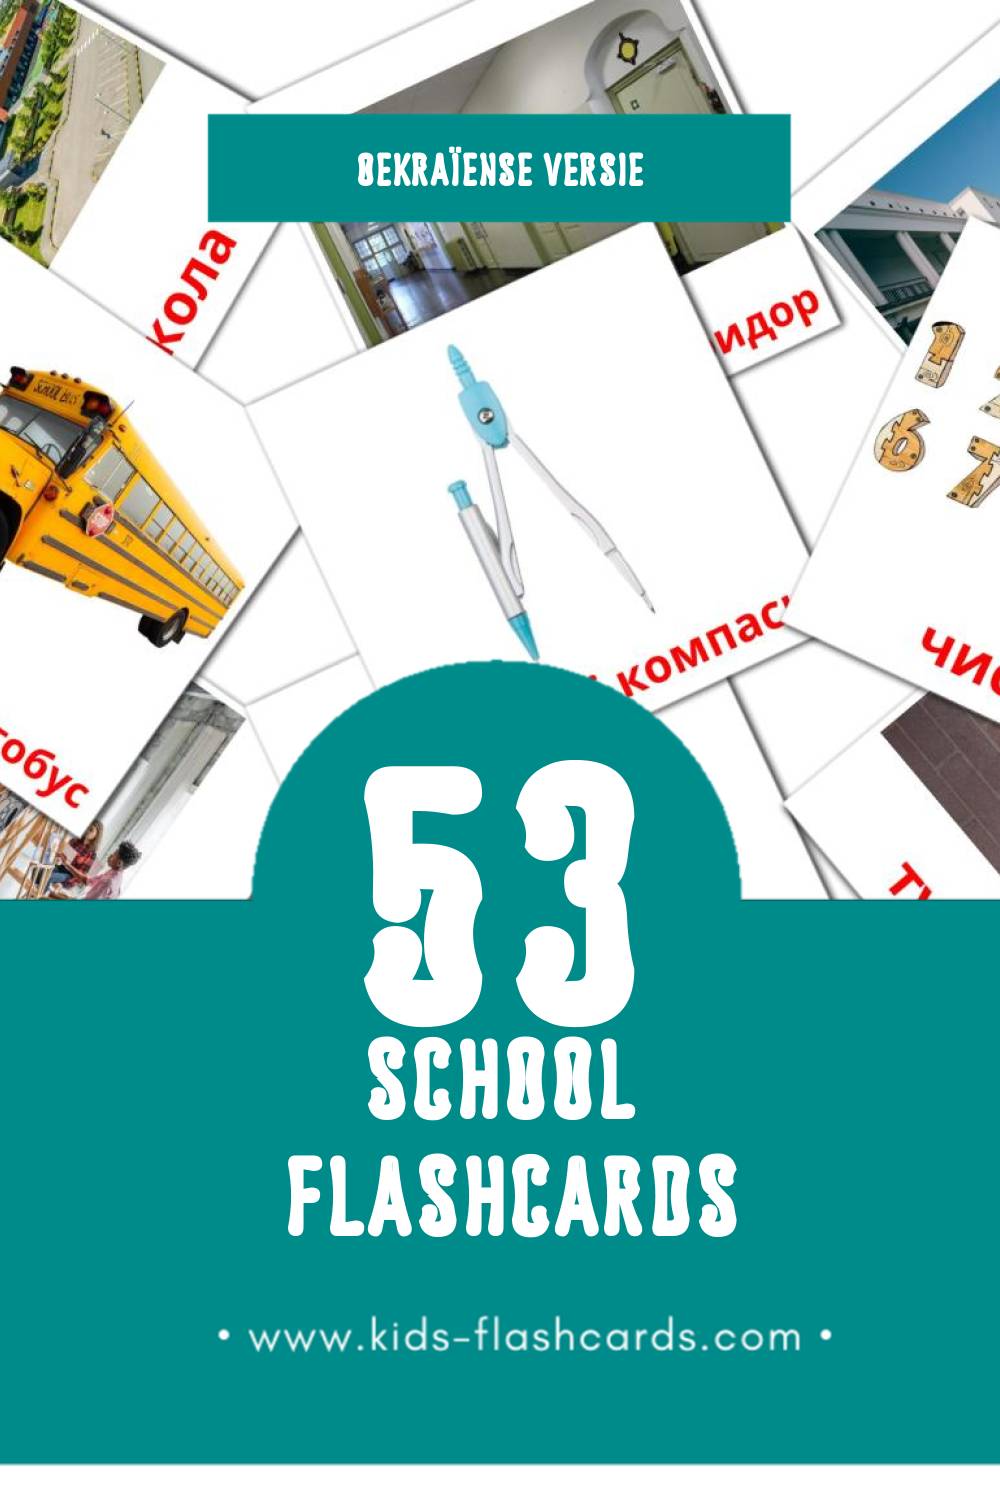 Visuele Школа Flashcards voor Kleuters (53 kaarten in het Oekraïens)